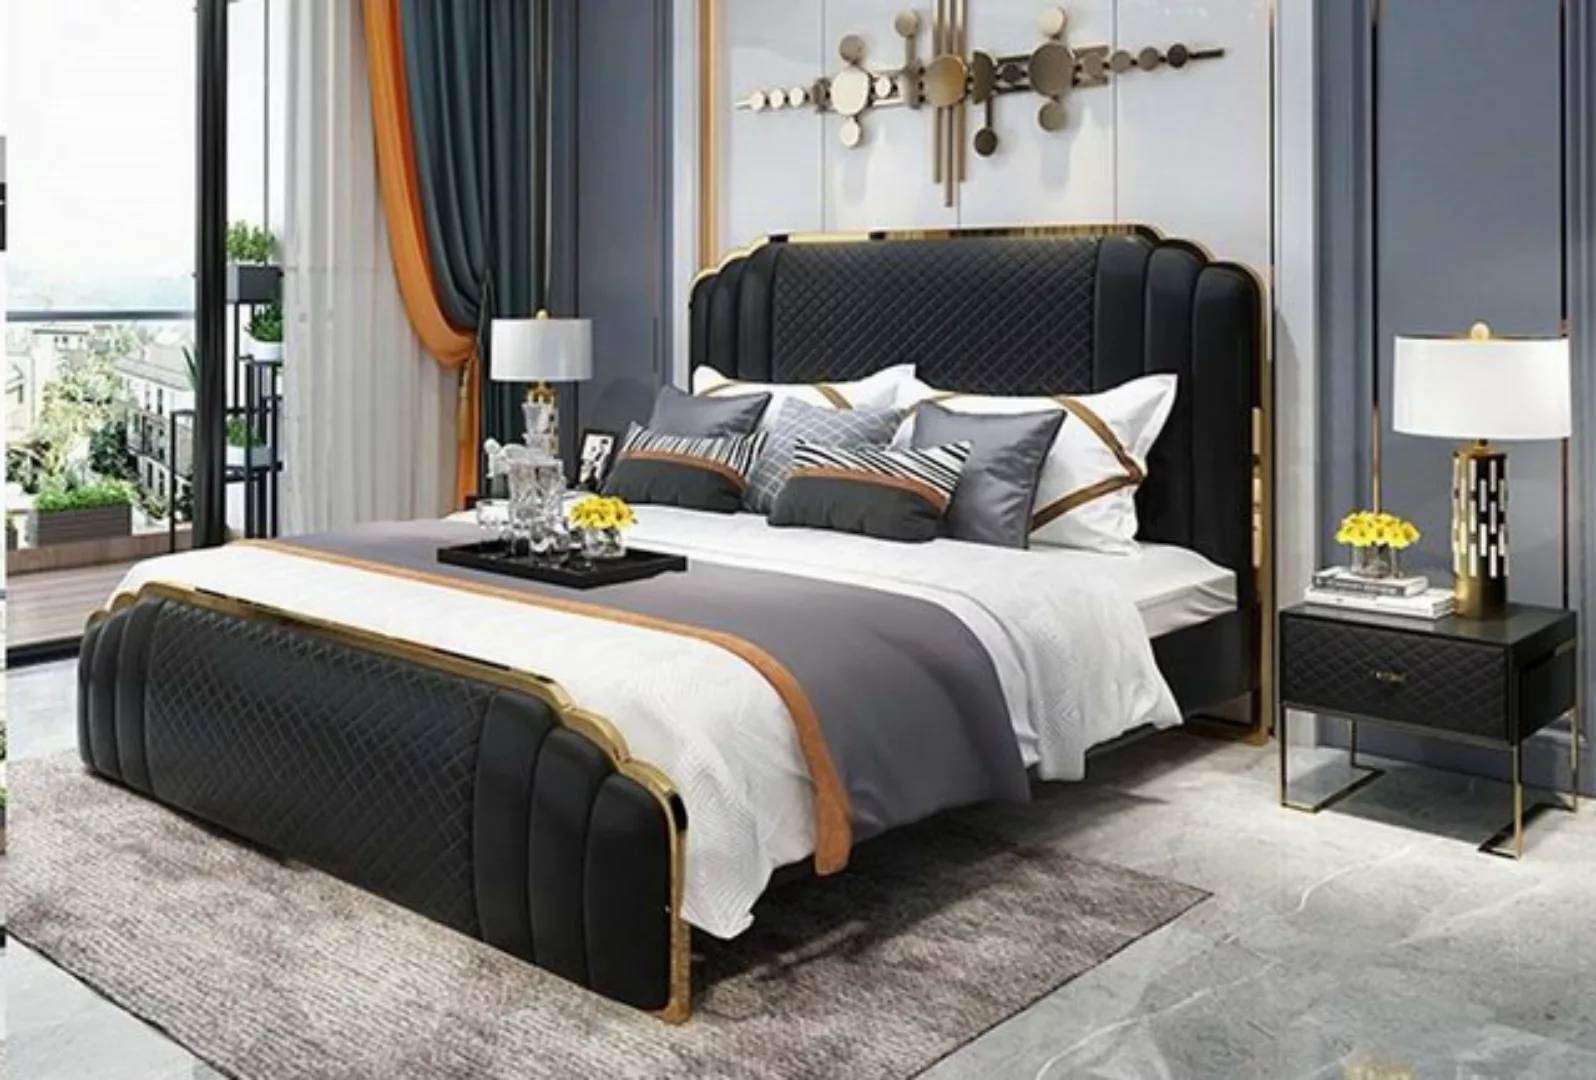 JVmoebel Bett, Bett Polster Design Luxus Doppel Hotel Betten Ehe Schlaf Zim günstig online kaufen